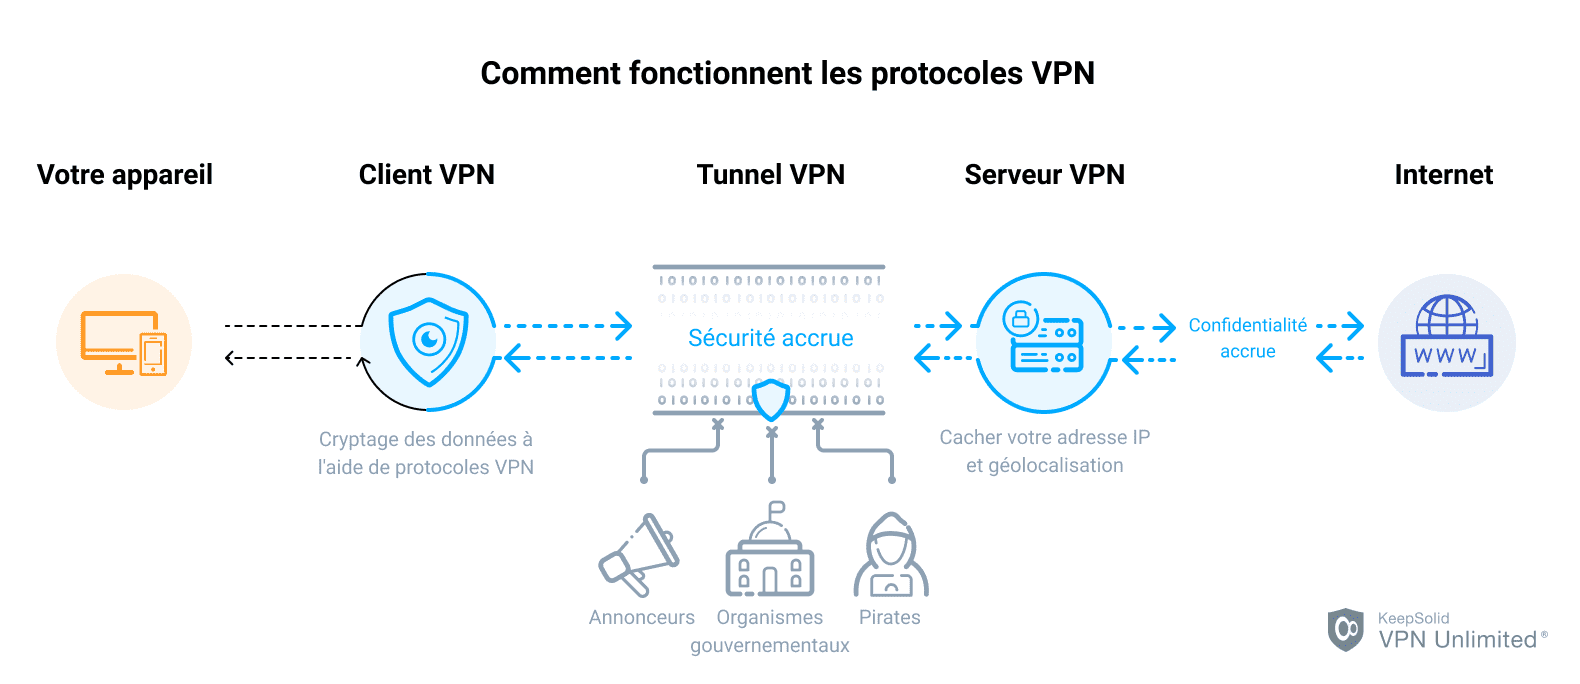 Comment fonctionnent les protocoles VPN